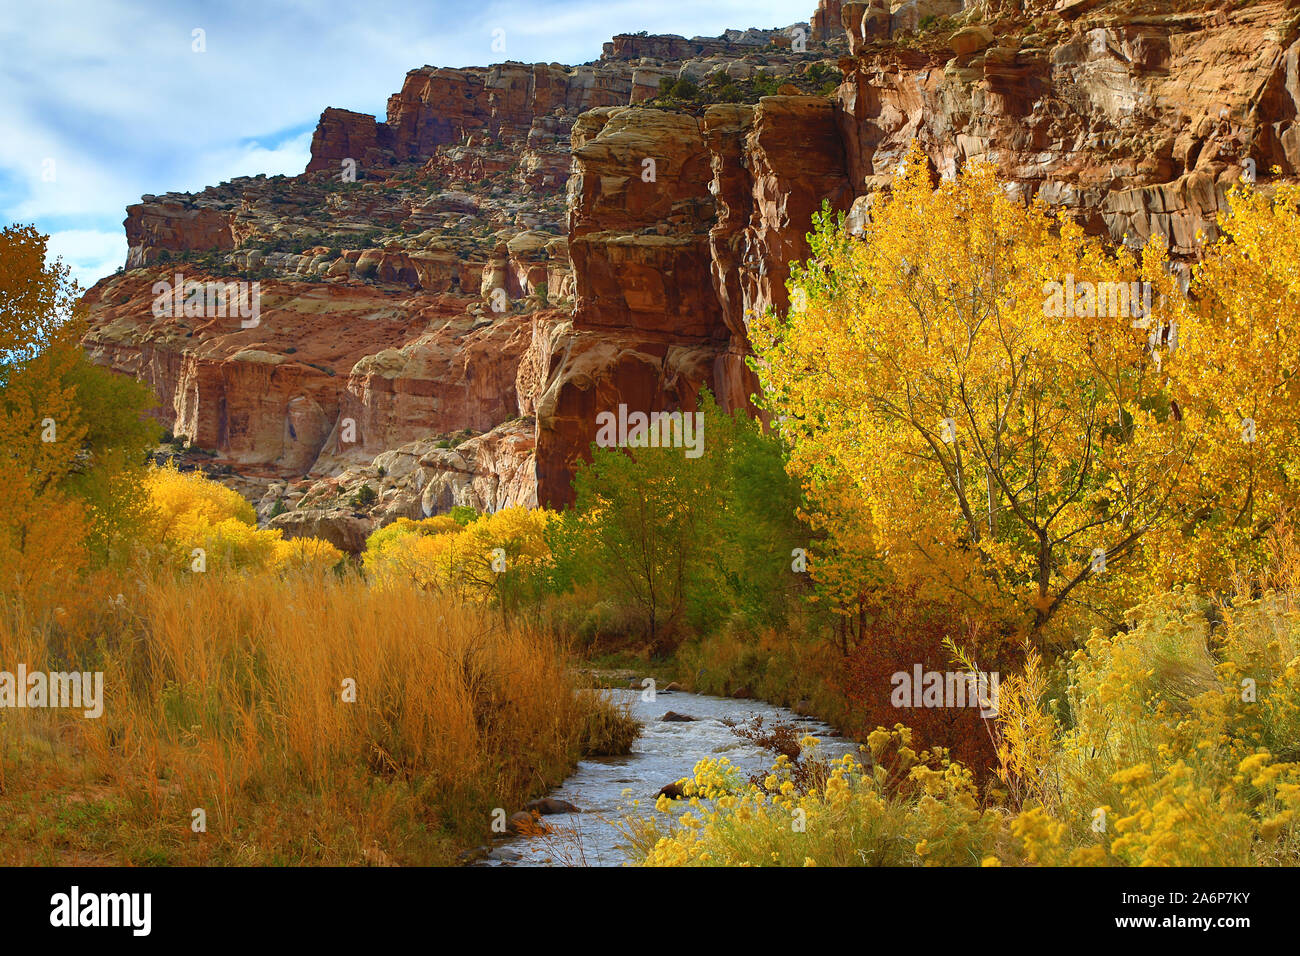 Esta es una vista de los colores del otoño a lo largo del río Fremont y acantilados de roca roja en el Parque Nacional Capitol Reef, Utah, EE.UU.. Foto de stock